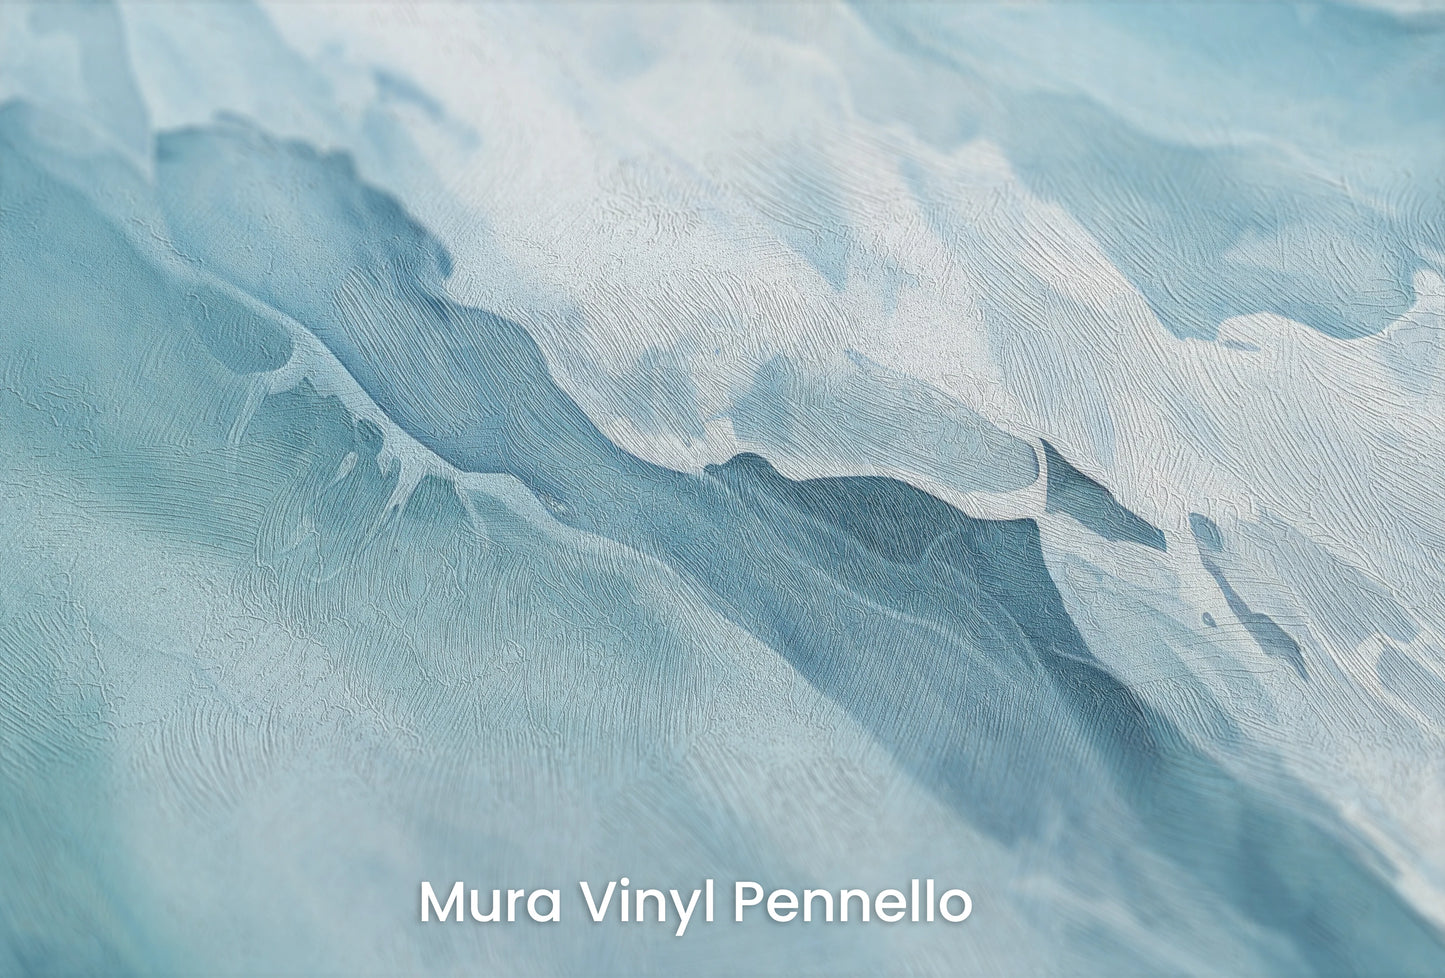 Zbliżenie na artystyczną fototapetę o nazwie Solar Flare na podłożu Mura Vinyl Pennello - faktura pociągnięć pędzla malarskiego.